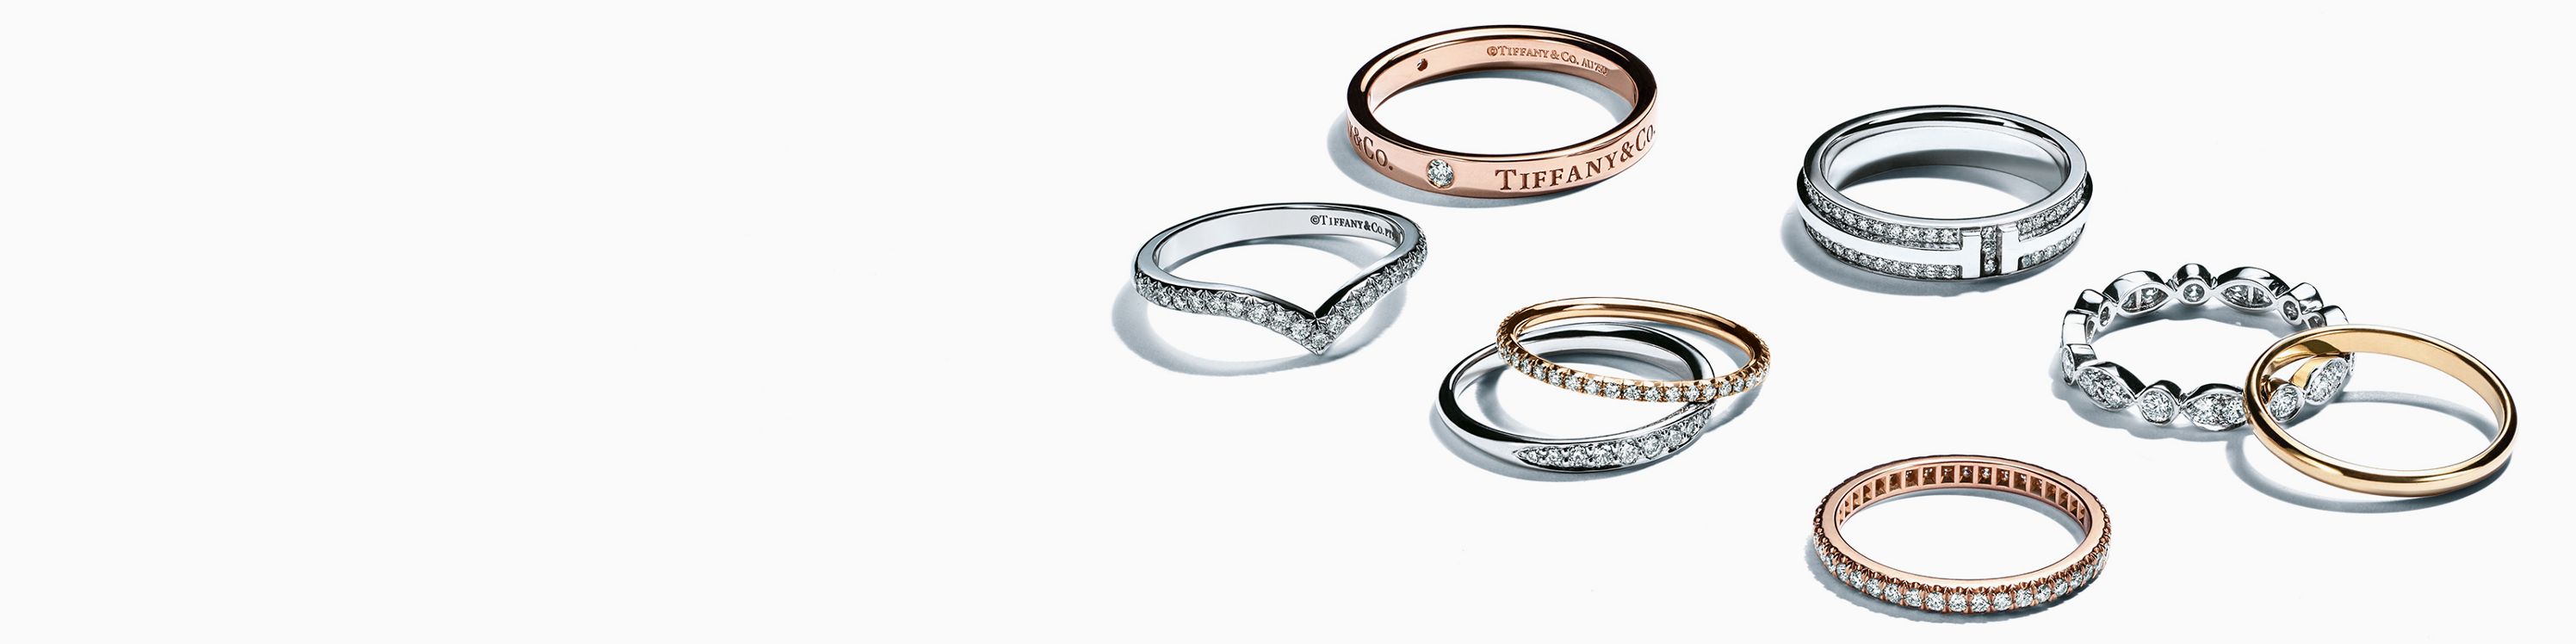 【新品未使用】Tiffany 結婚指輪 マリッジリング イエローゴールド